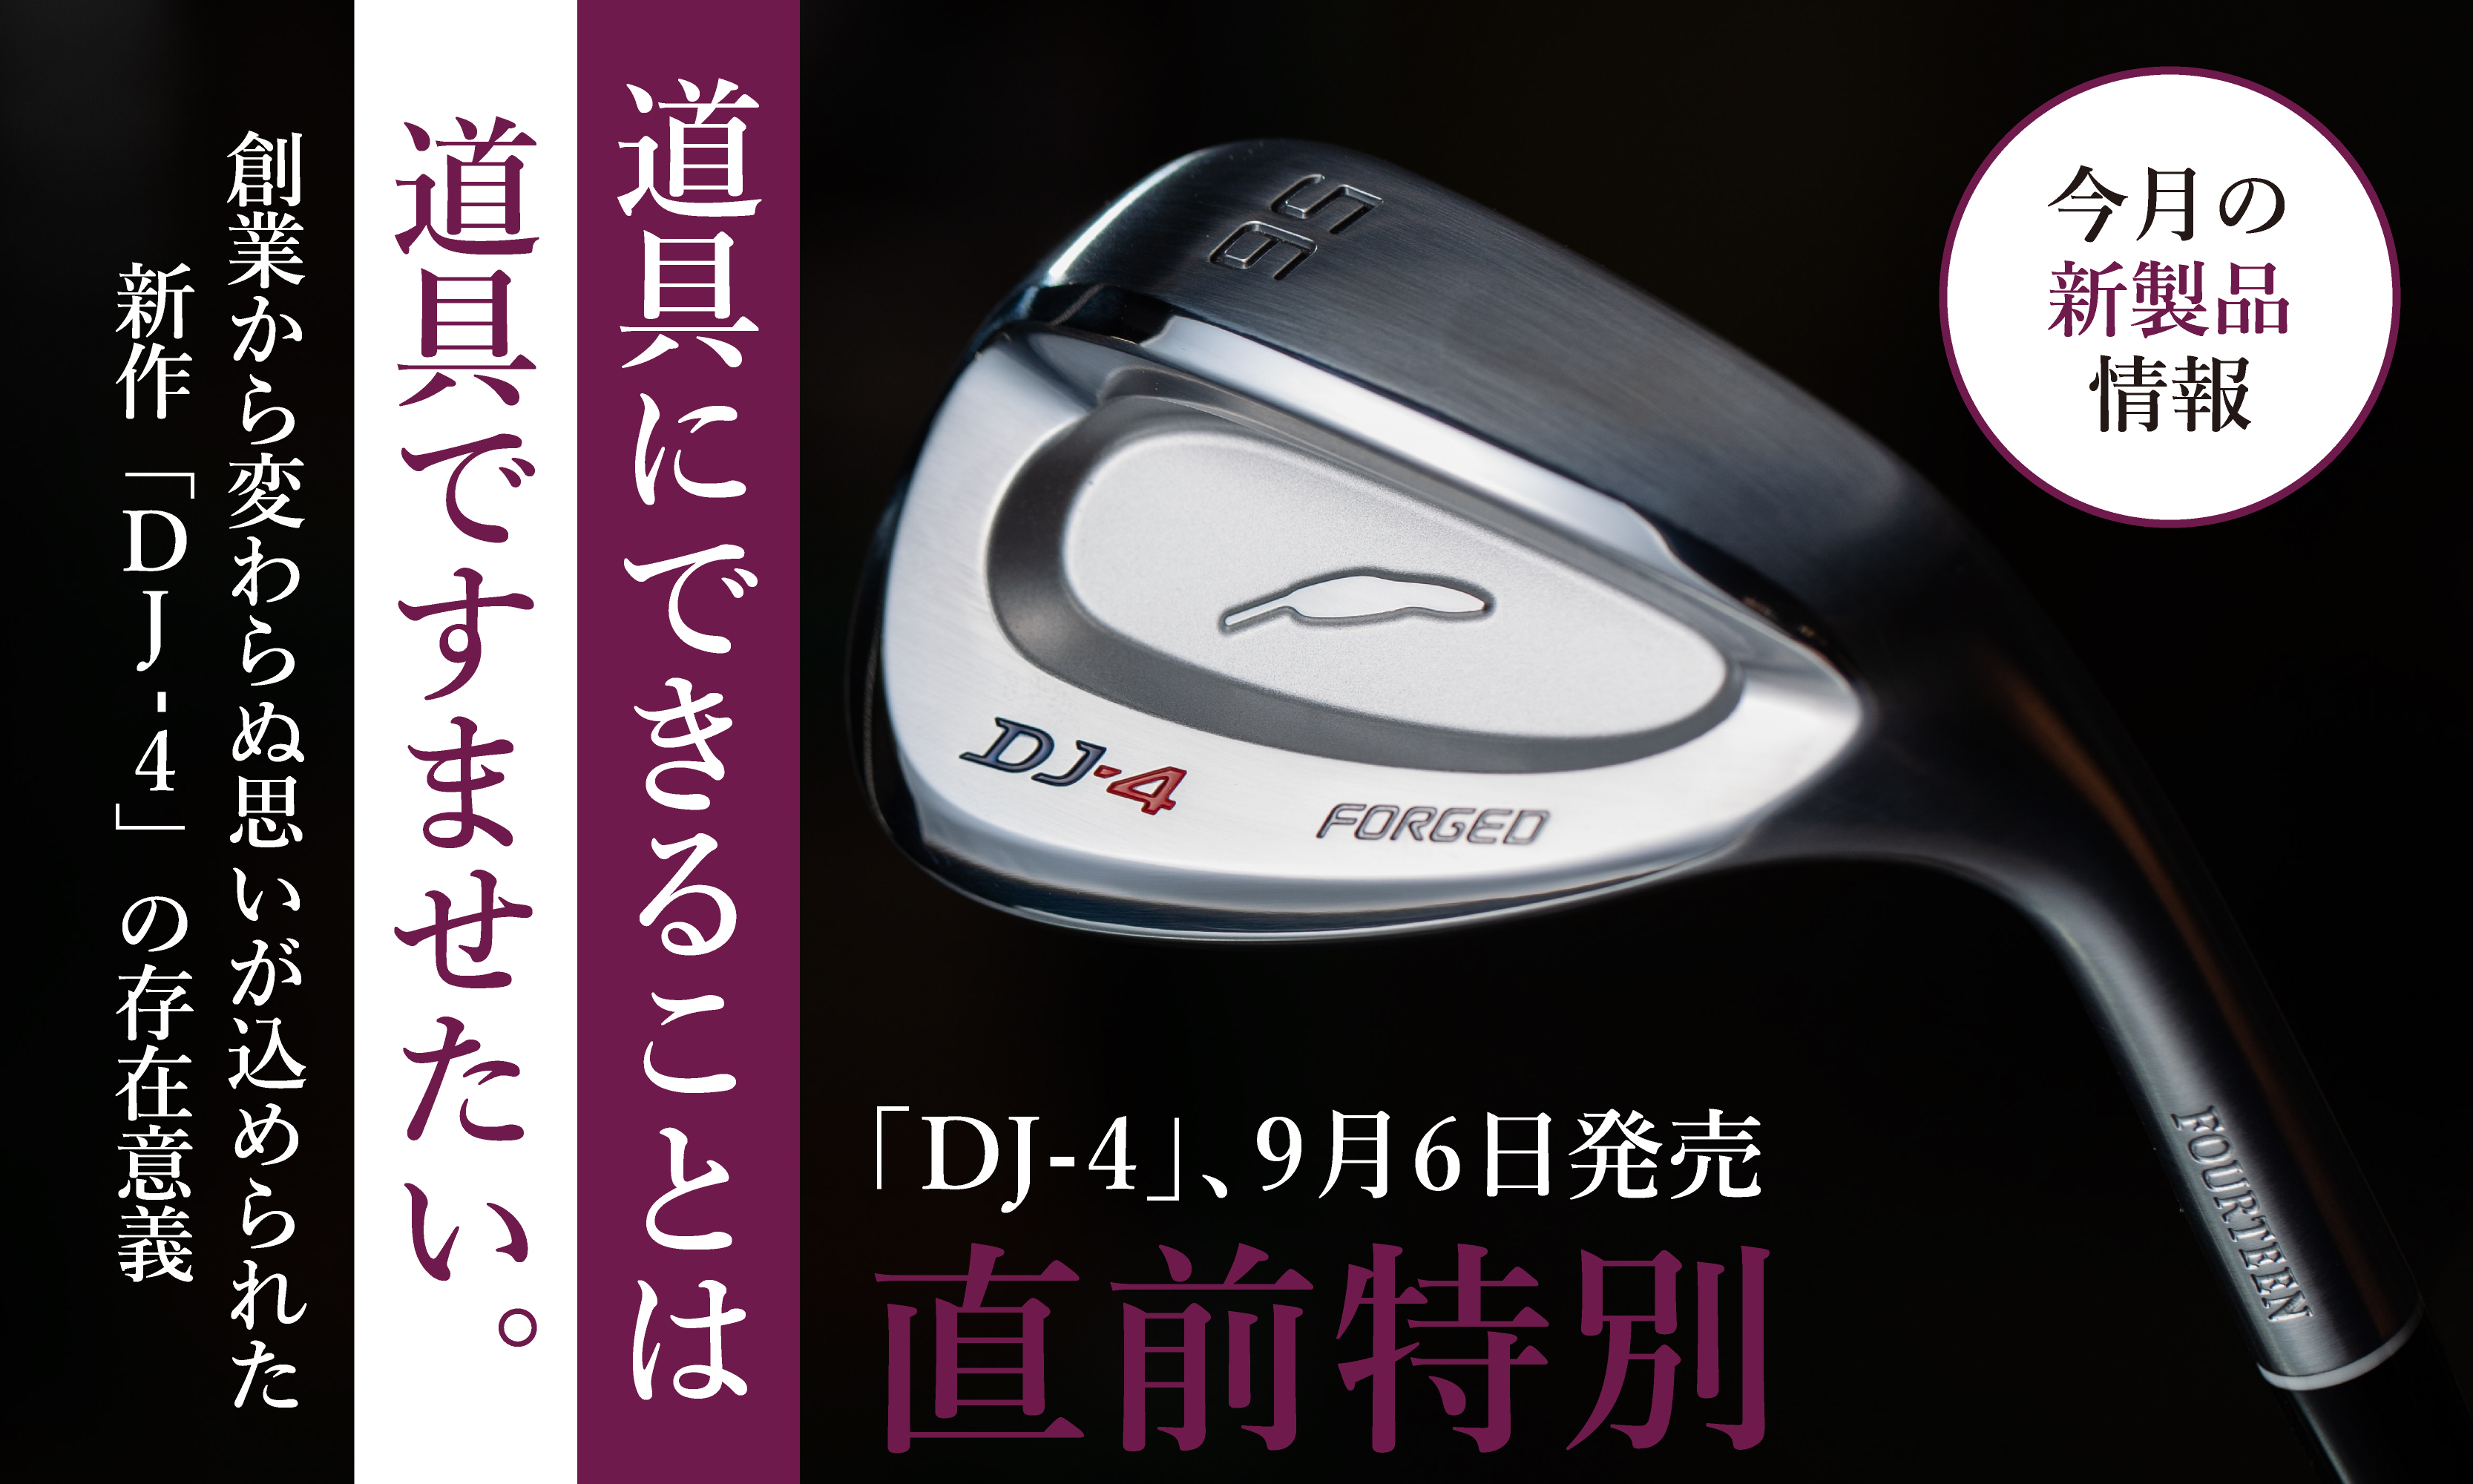 DJ-4 発売直前情報